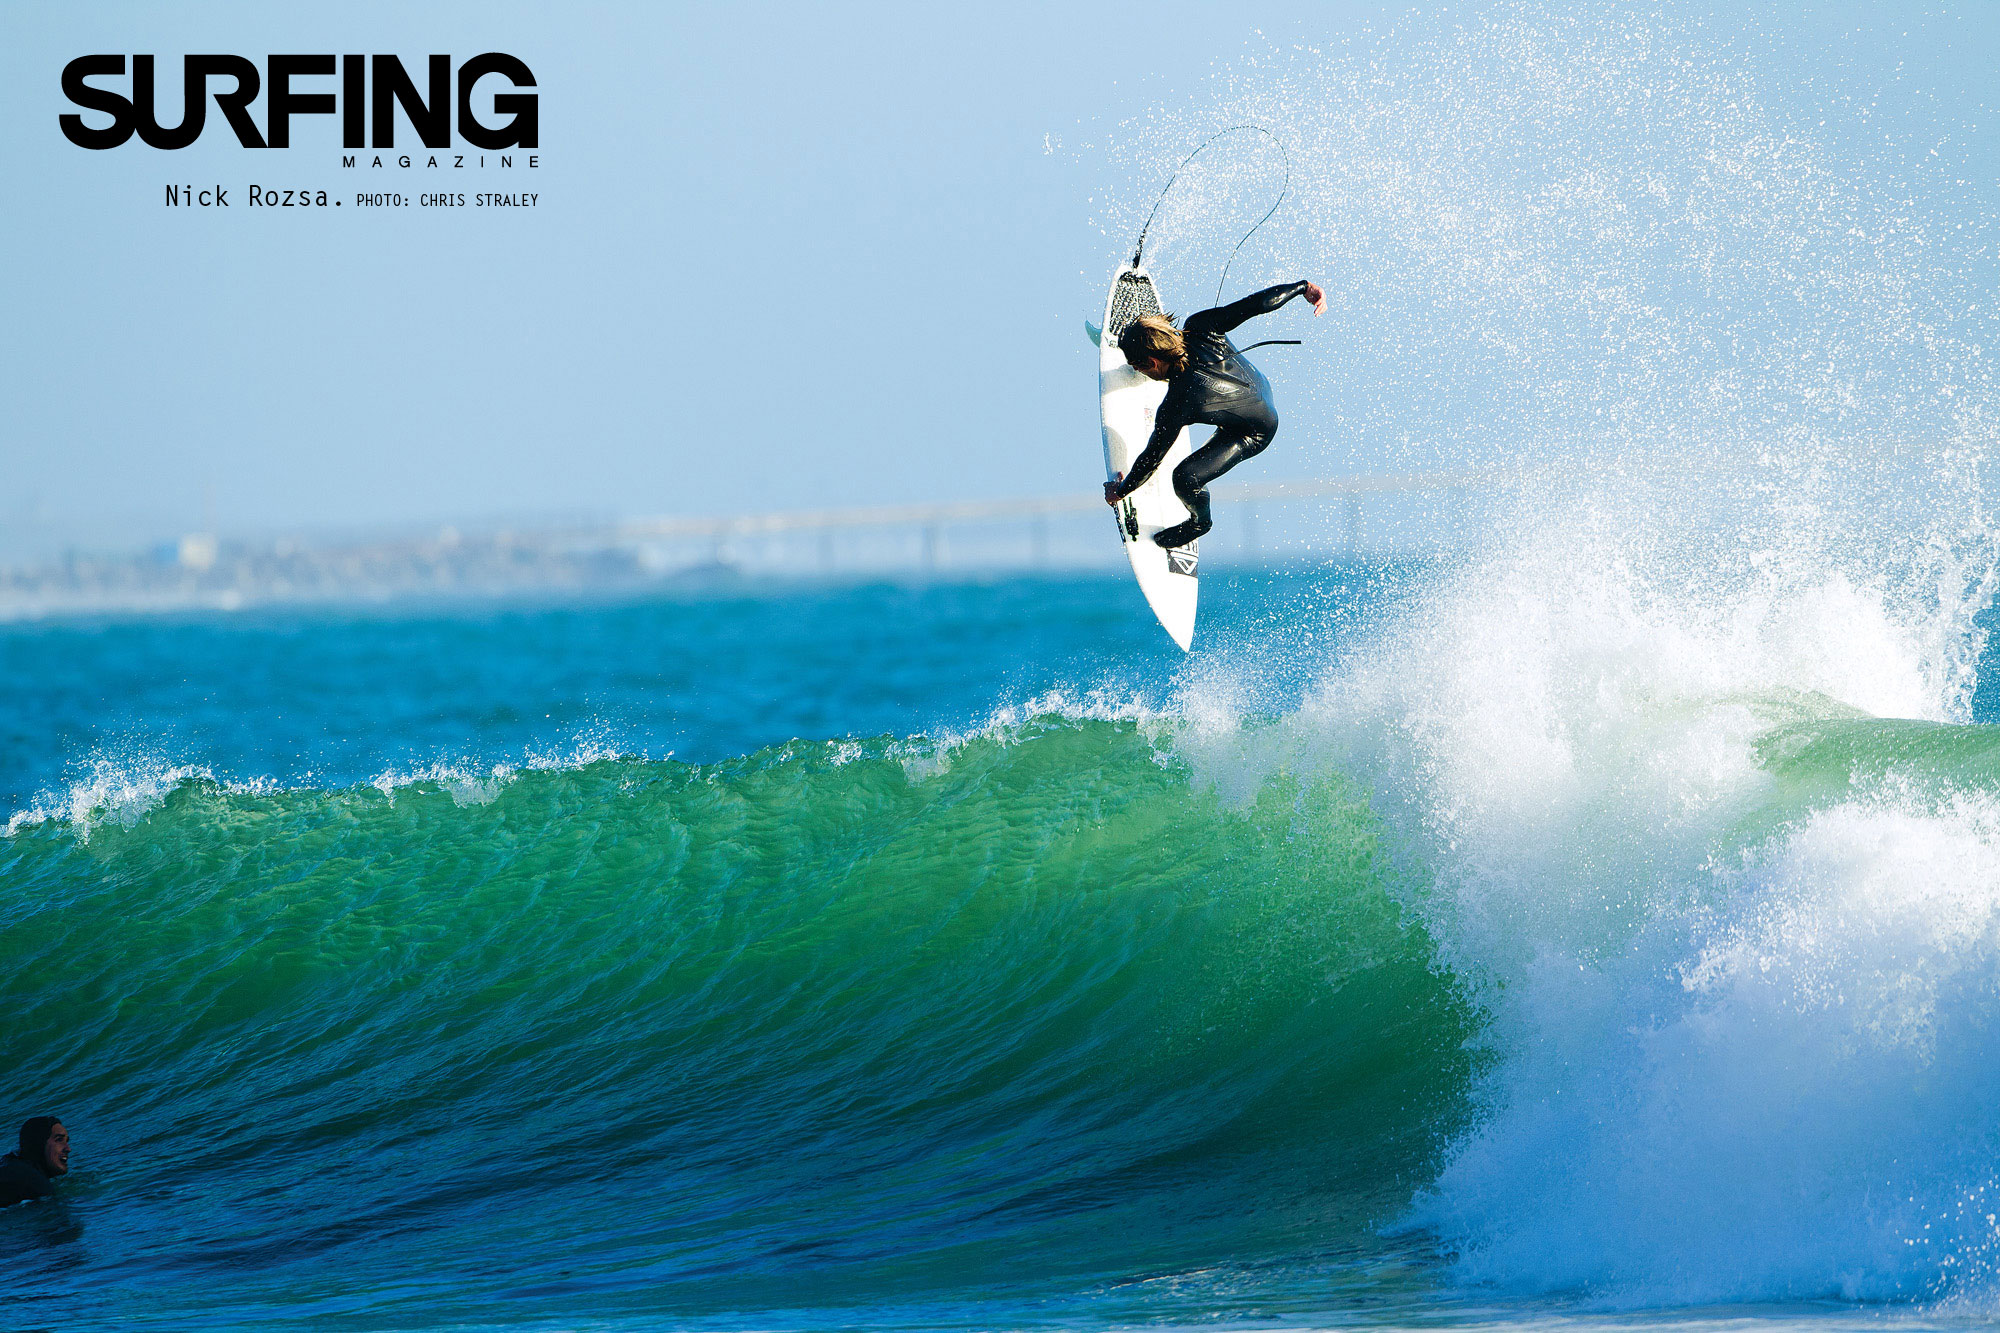 surfing desktop wallpaper nick rosza chris straley surfing magazine